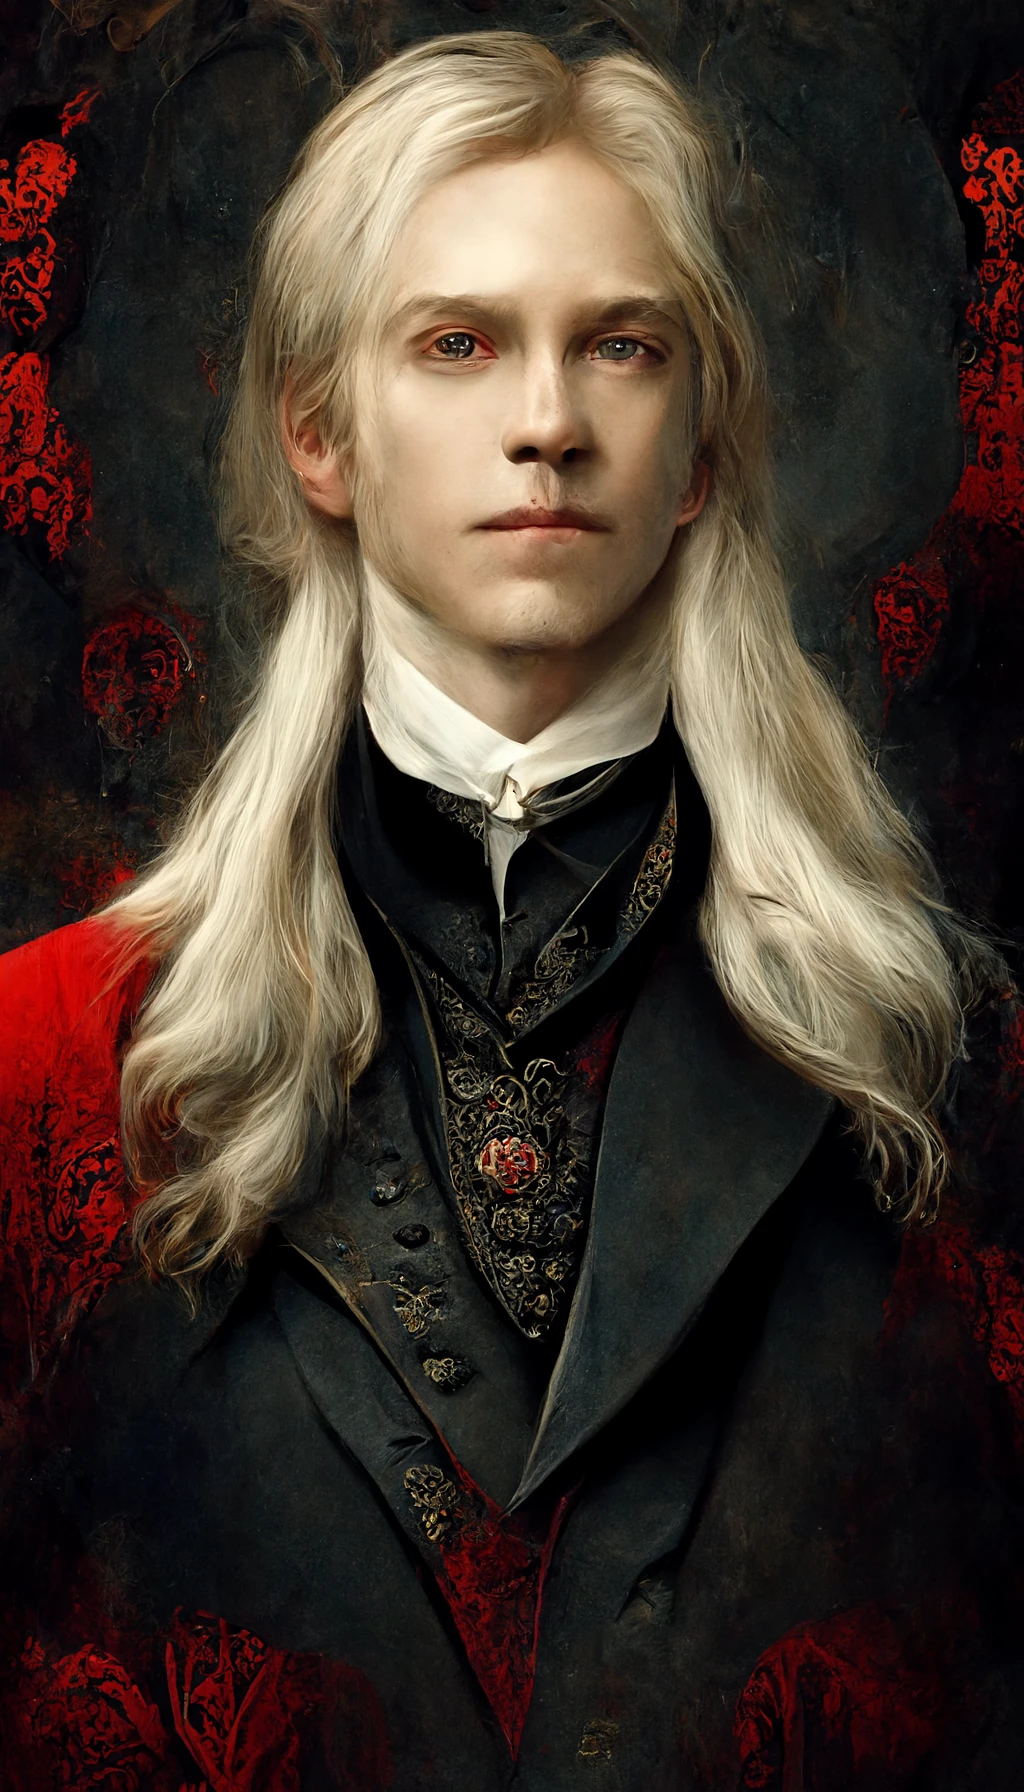 维多利亚贵族的华丽吸血鬼肖像